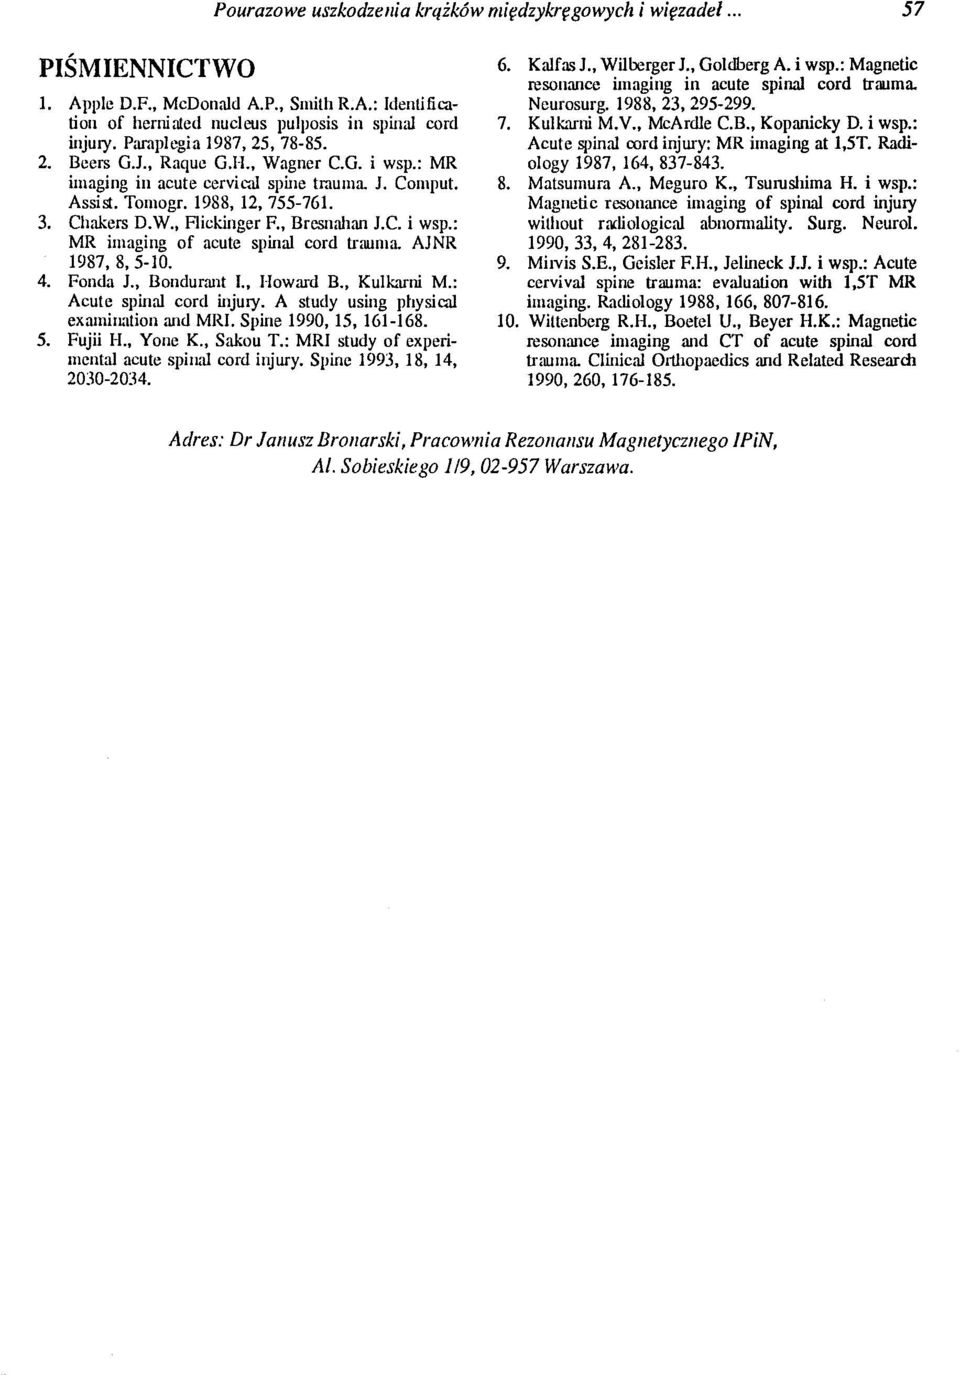 , Bresnahan J.C. i wsp.: MR imaging of acute SpUlal cord trauma. AJNR 1987,8,5-10. 4. Fonda J., BondurmIt L, I-Ioward B., Kulkami M.: Acute SpUlal cord UljUI)'.